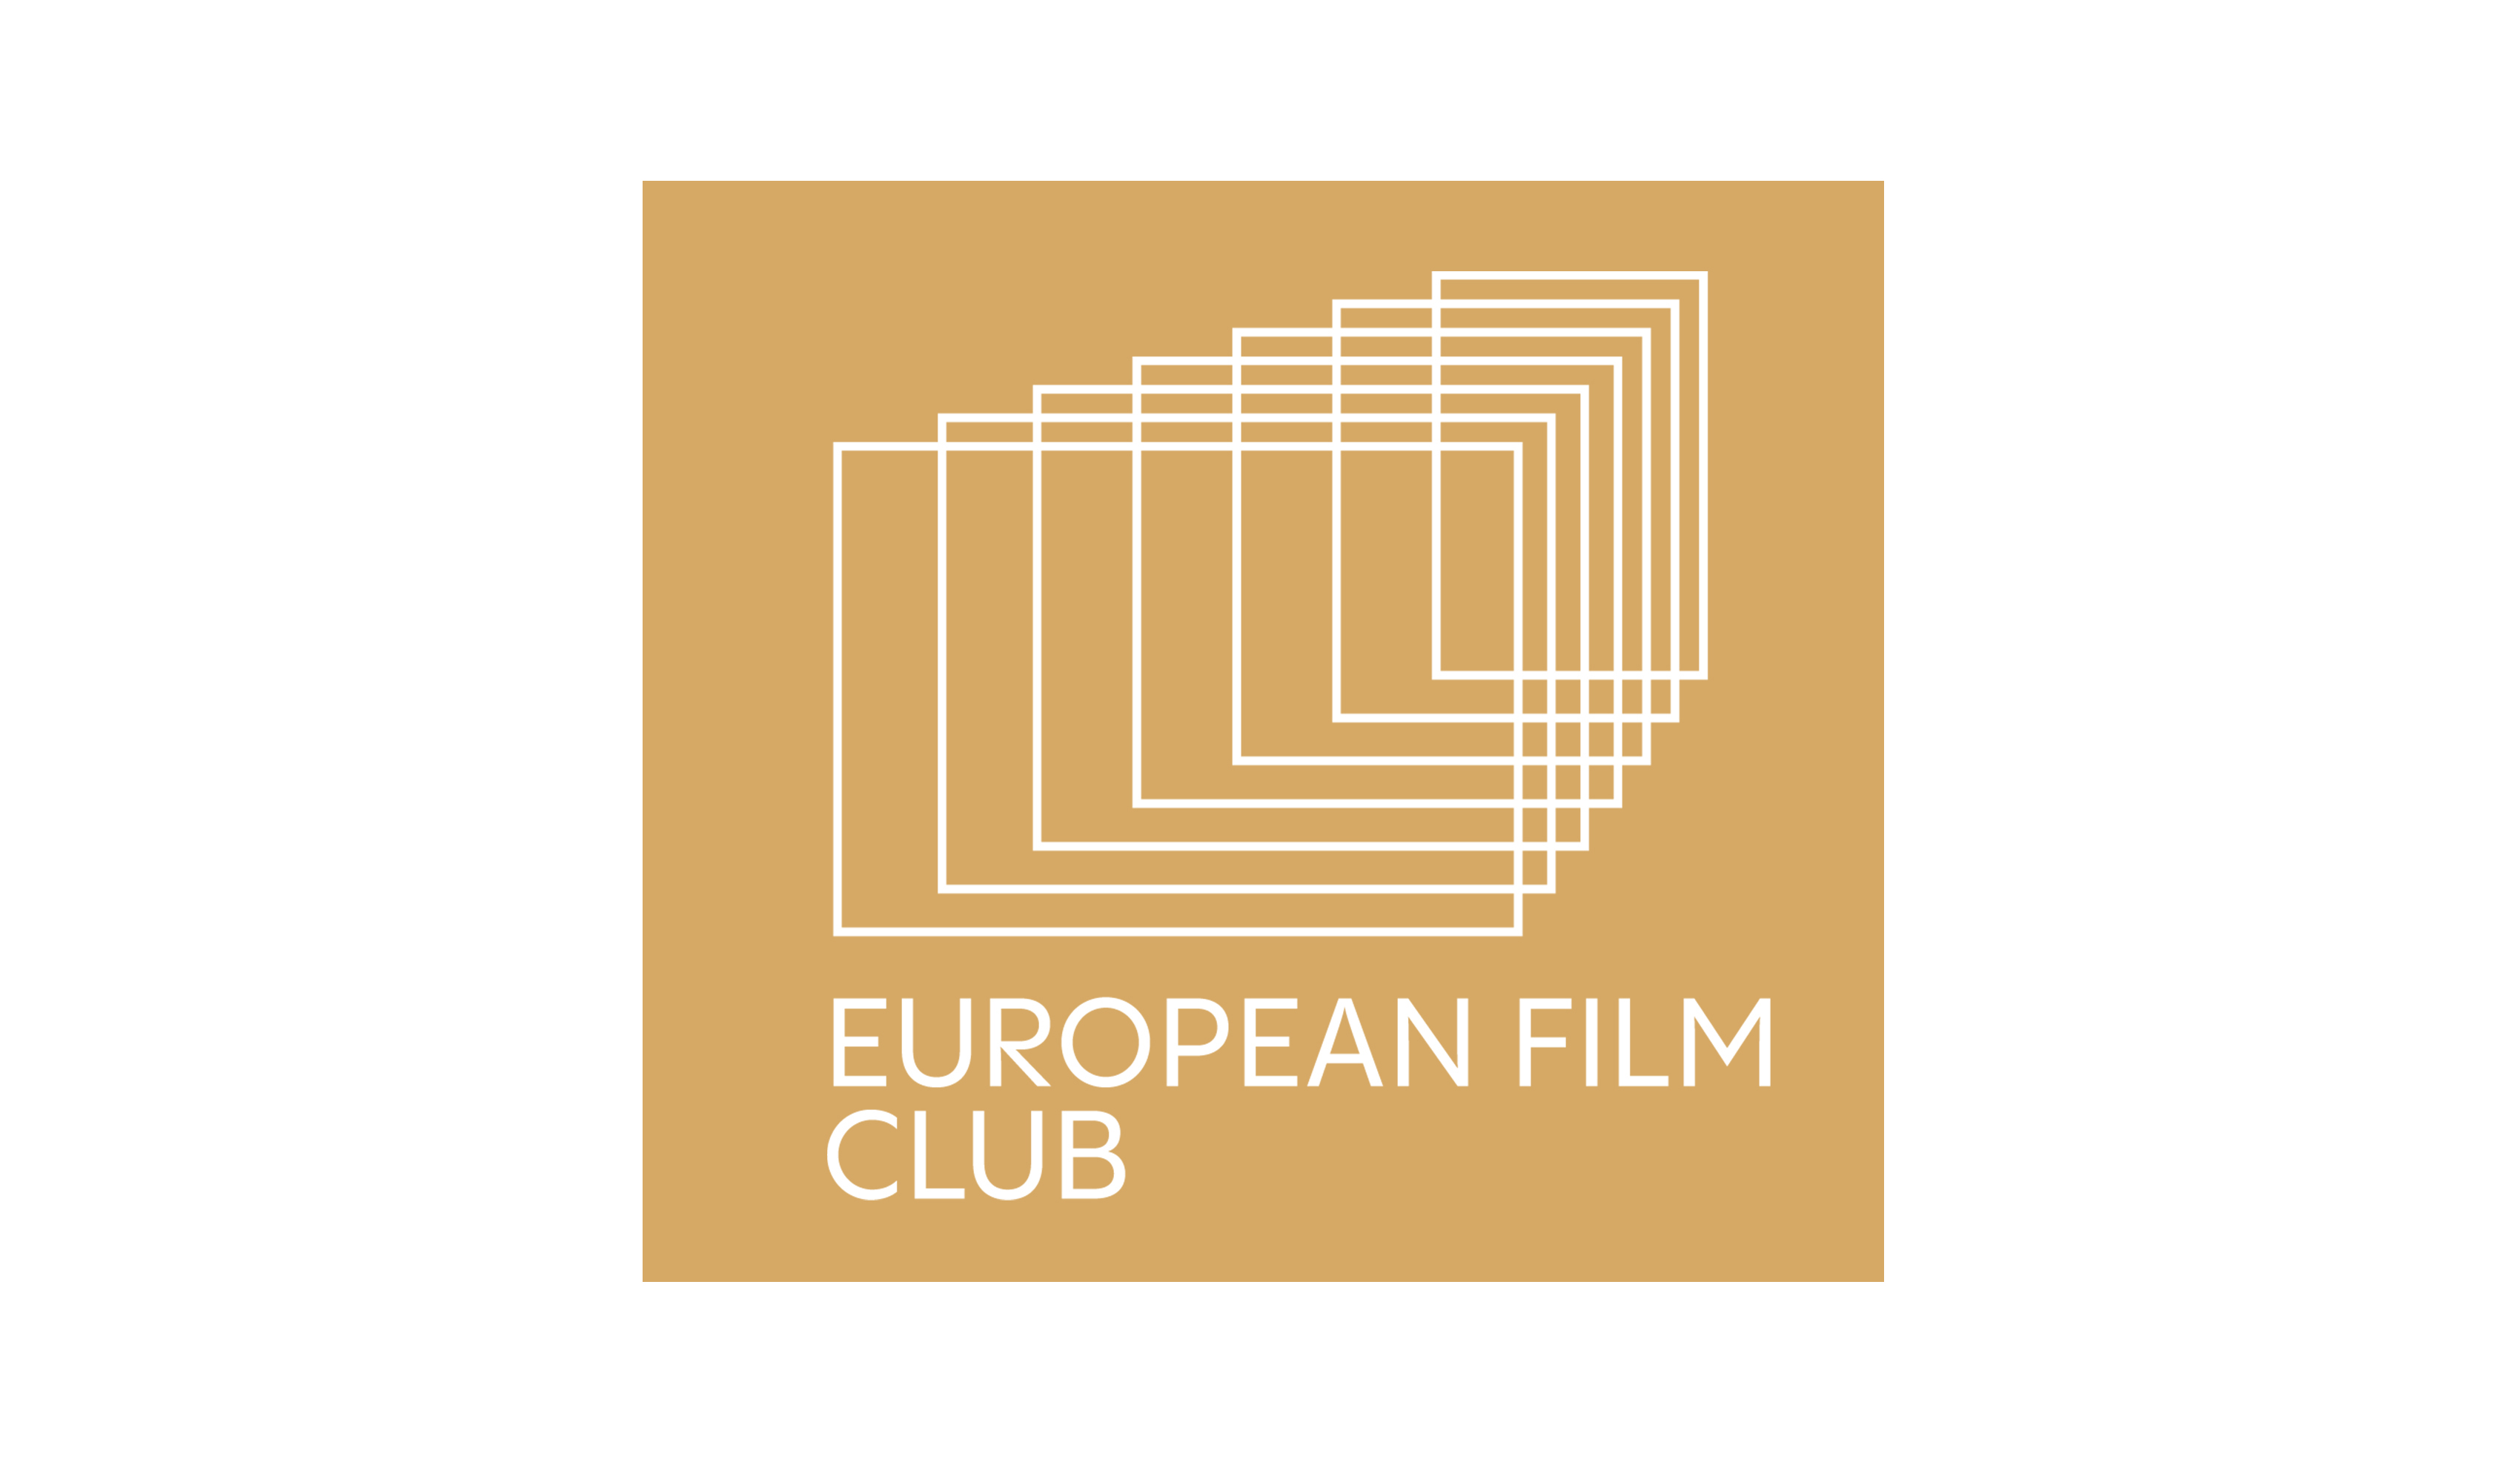 EUROPEAN FILM CLUB